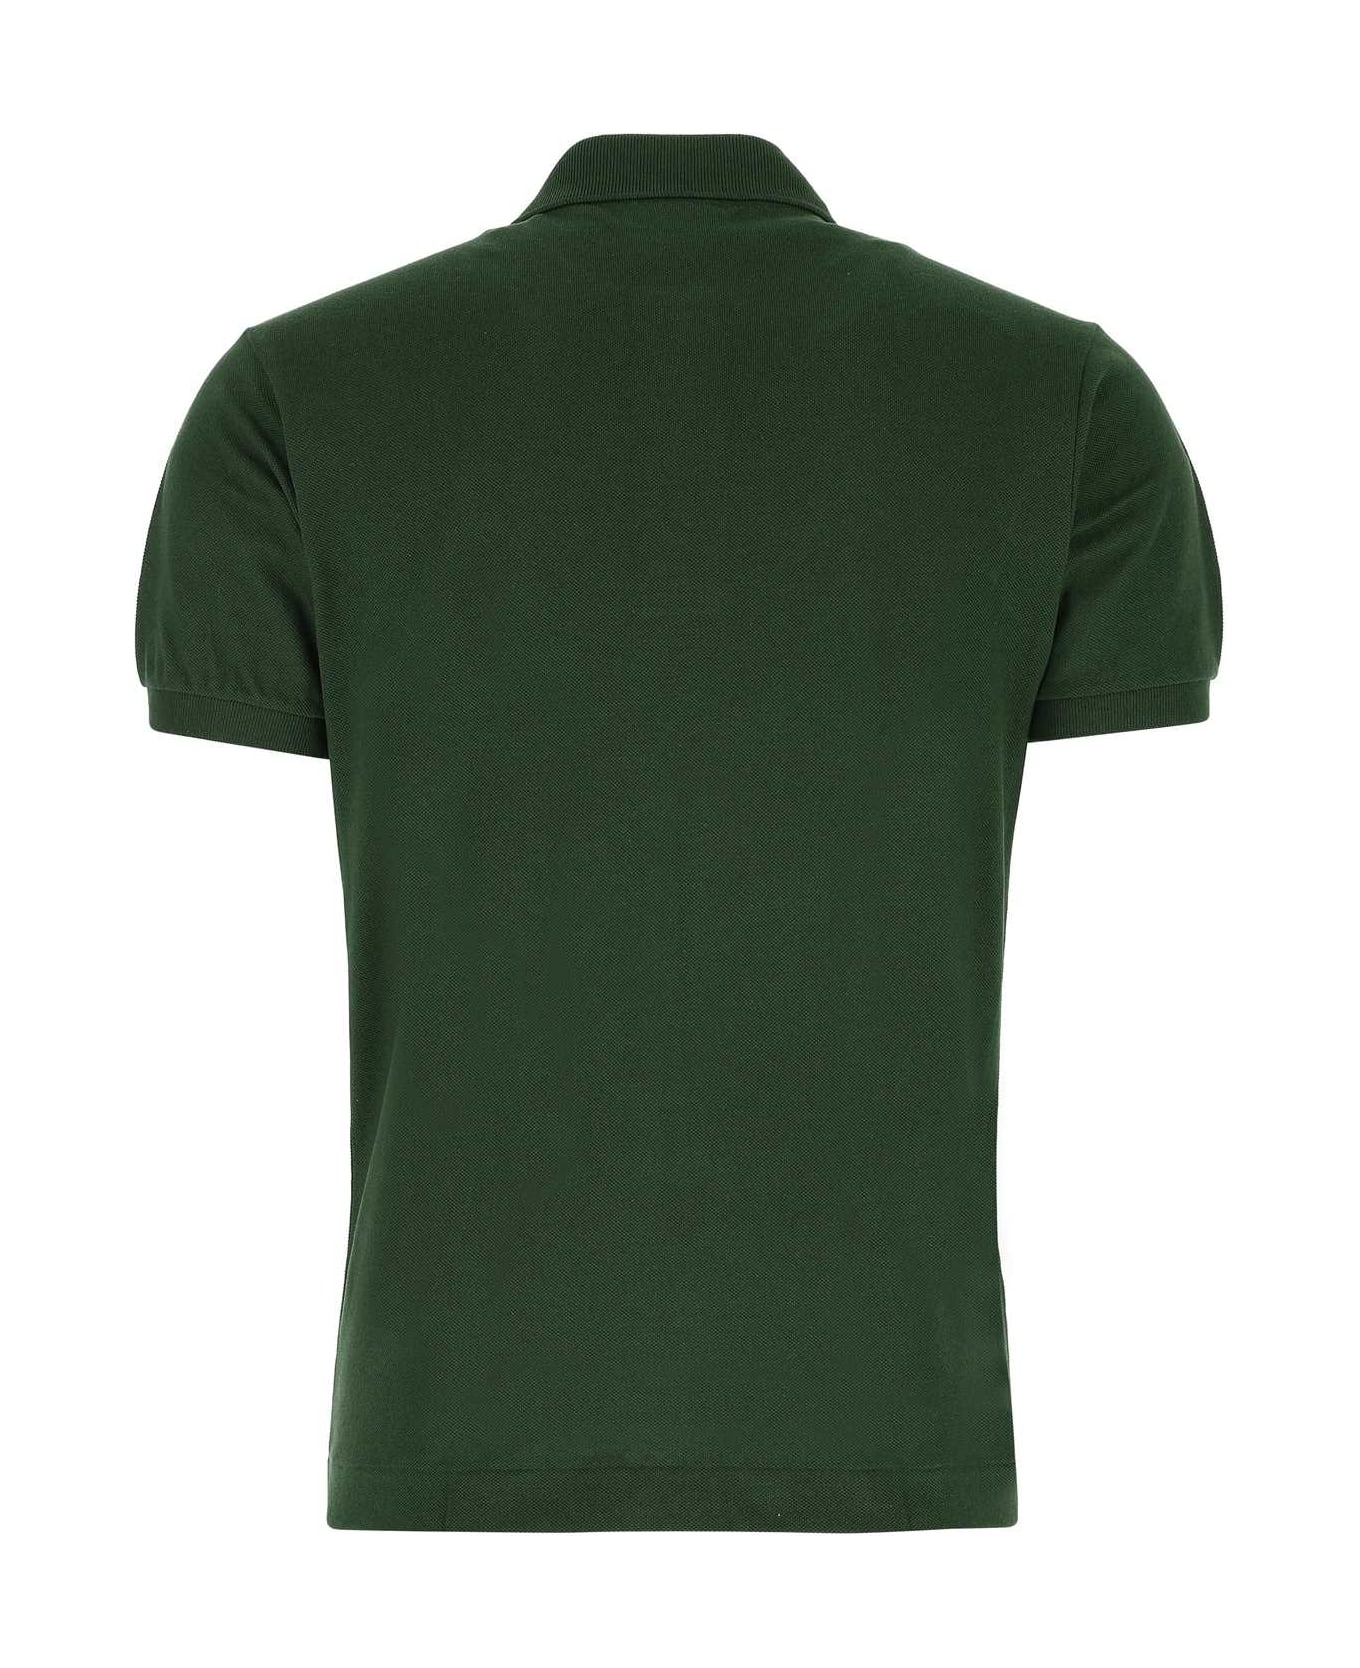 Lacoste Dark Green Piquet Polo Shirt - 132